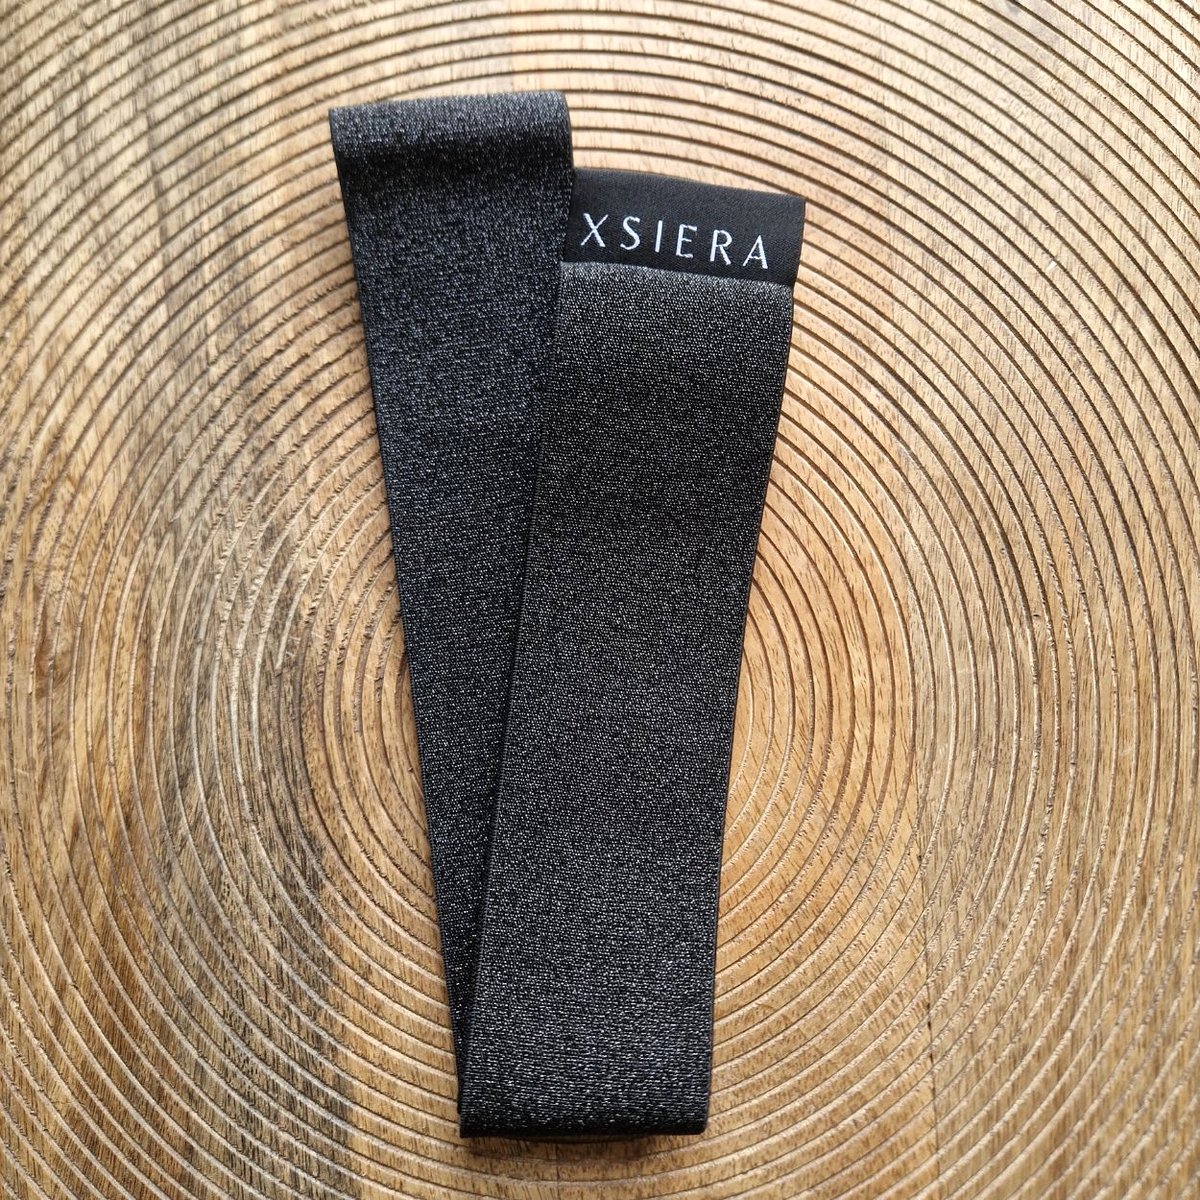 XSIERA - Handdoek elastiek - glitter zwart - strandbed elastiek - Elastische band strandlaken - Strand knijper - Towelband - Towelstrap